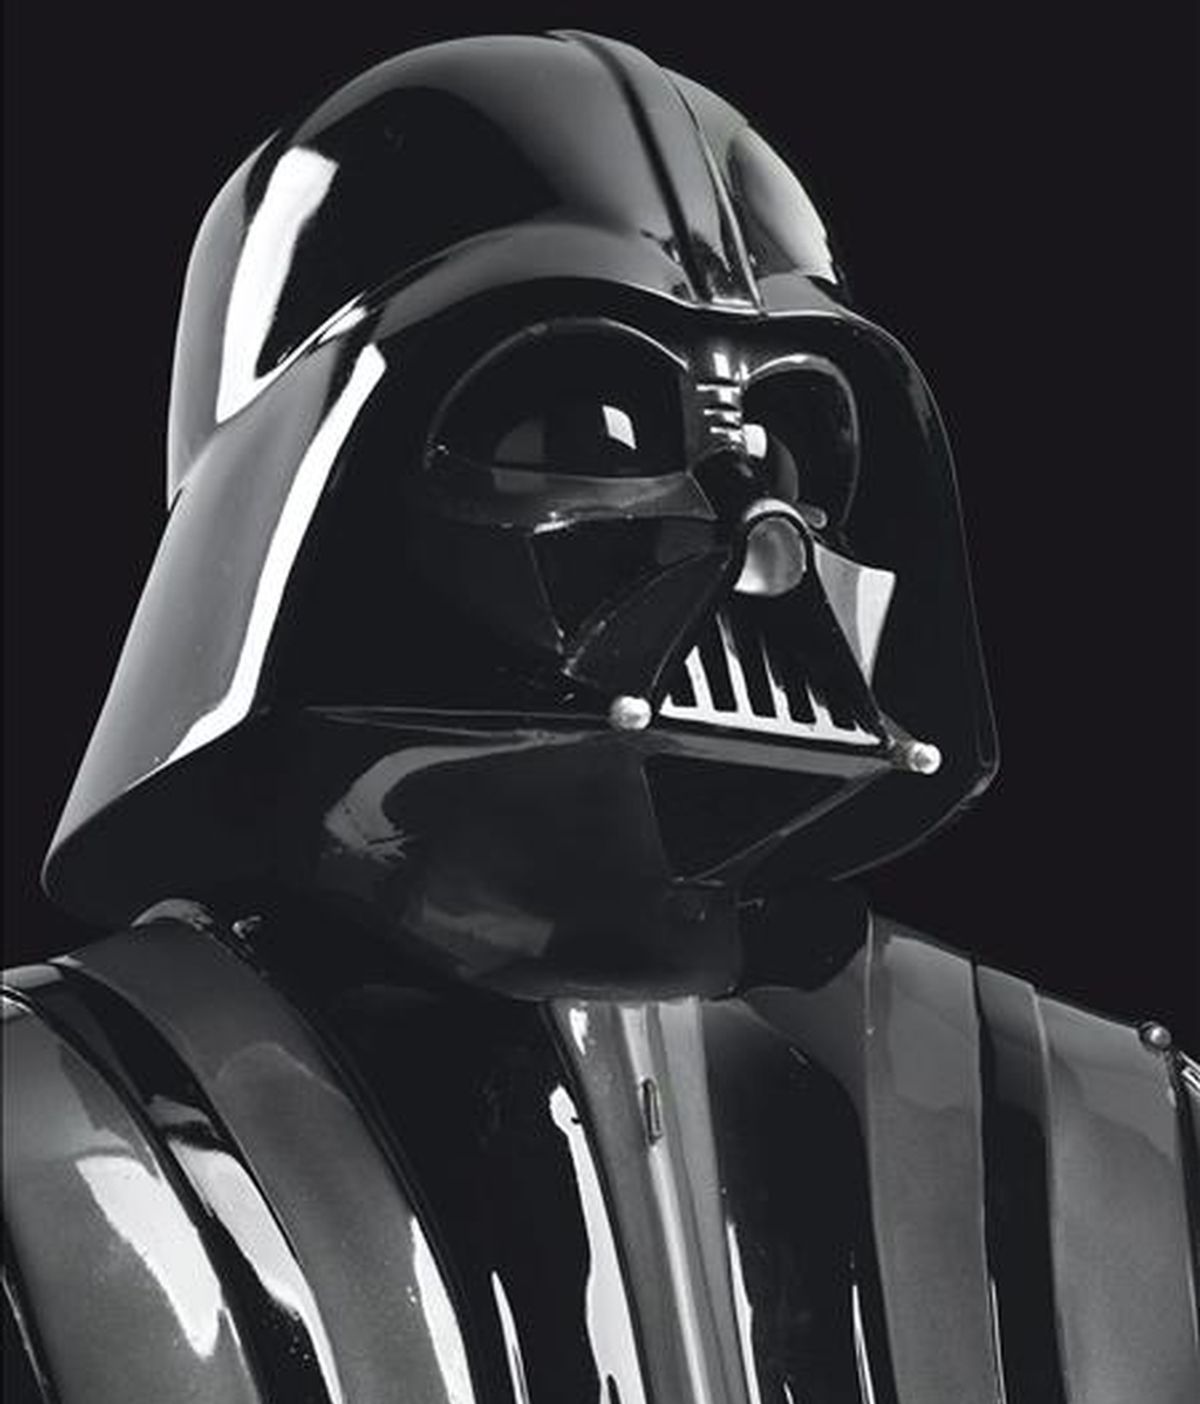 Foto sin fechar, facilitada por la casa de subastas Christie's, que muestra el traje original de Darth Vader, el malo de la saga 'La Guerra de las Galaxias' de George Lucas. EFE